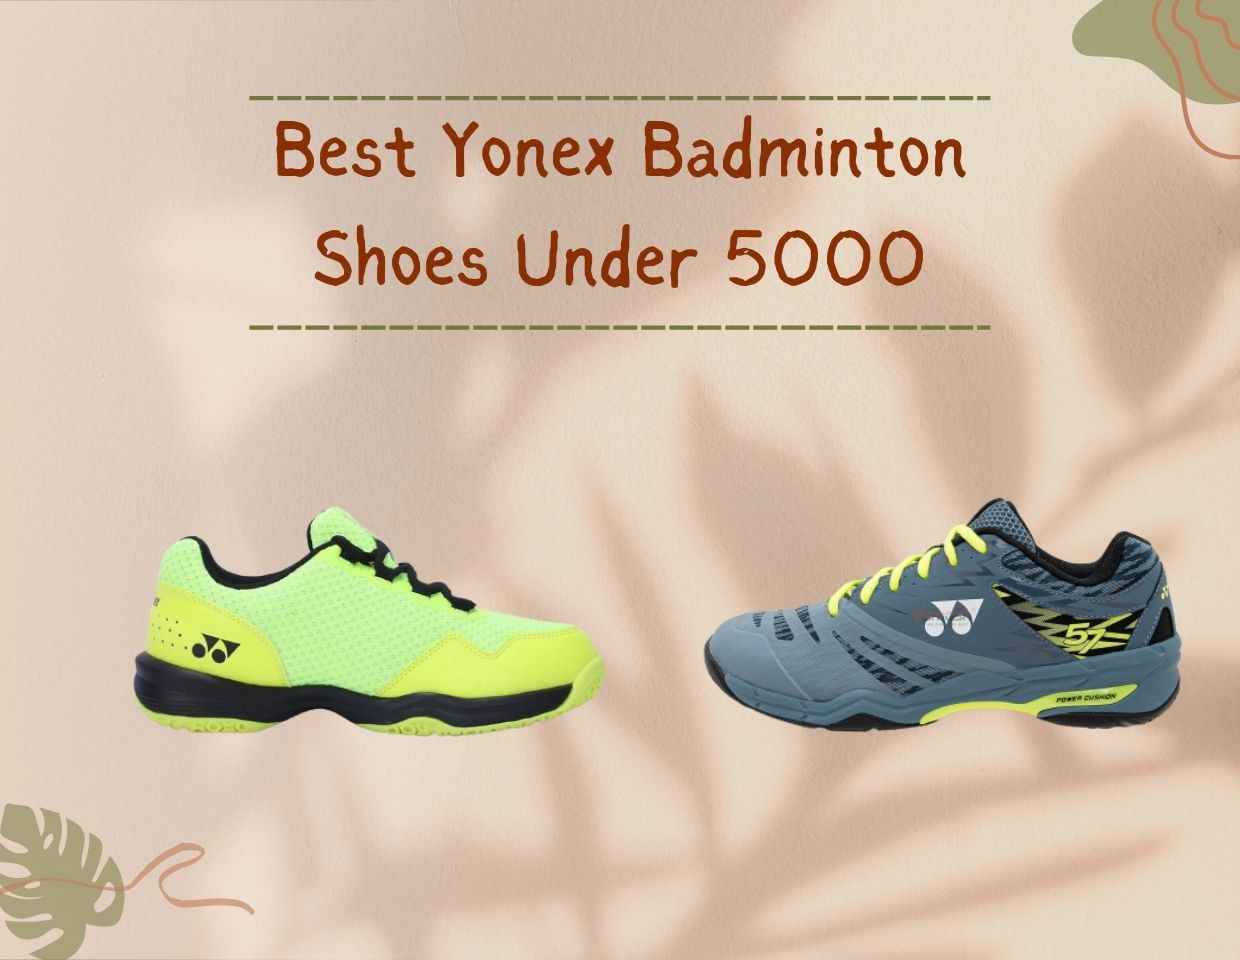 Best Yonex Badminton Shoes Under 5000 Reviews